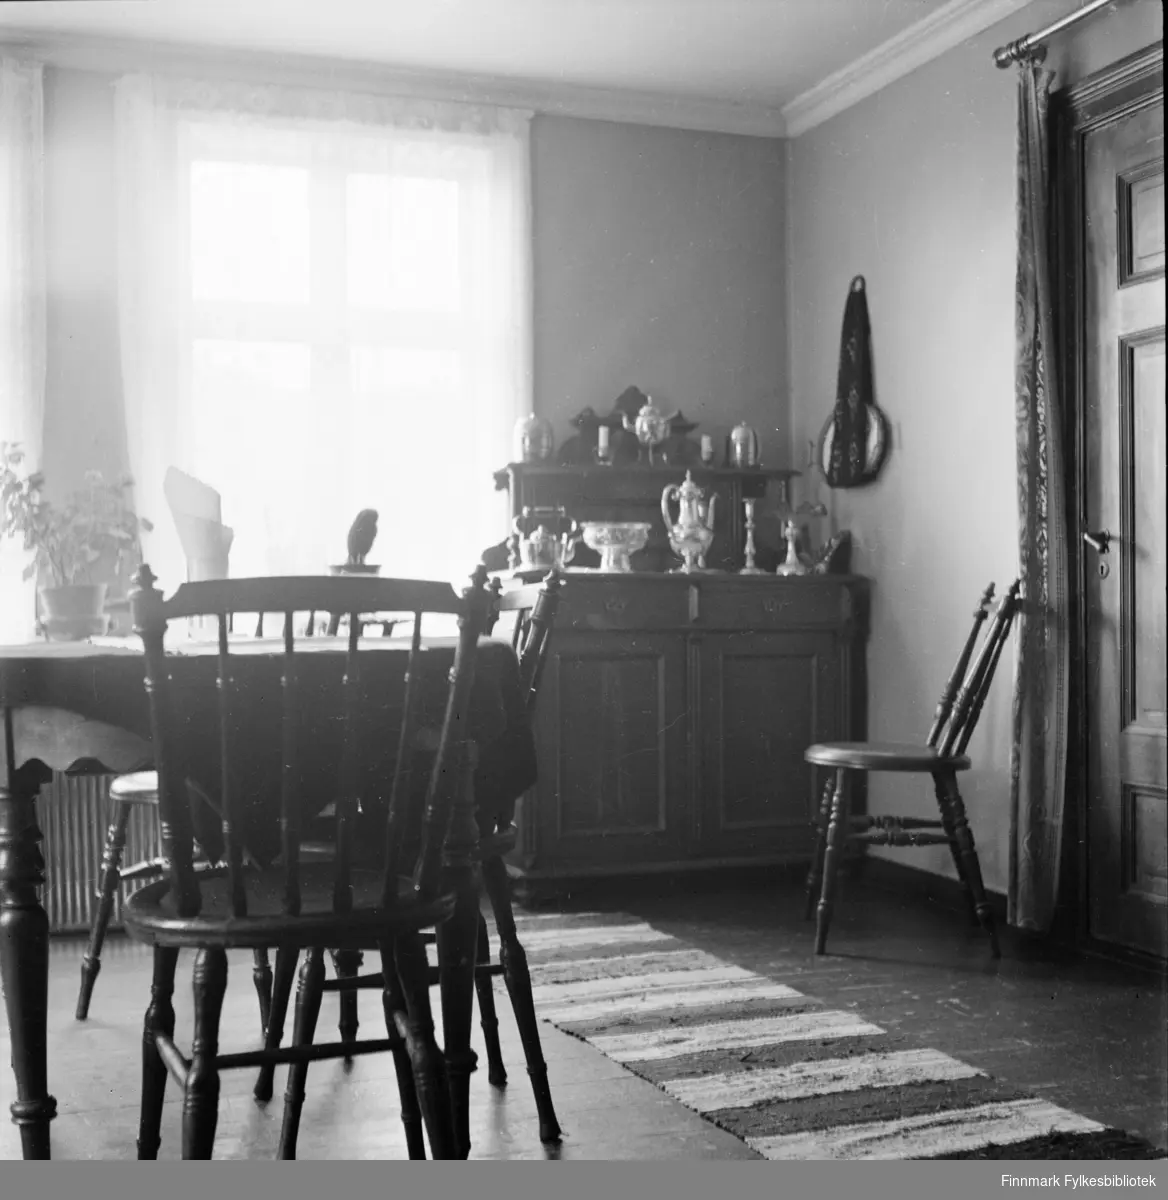 Interiør fra et hus i Kjøllefjord, fotografert i 1940. I forgrunnen sees et spisebord med dreide pinnestoler. I bakgrunnen sees et utskåret skatoll med sølvtøy servise oppstilt i flere nivåer. En fillerye ligger på gulvet.